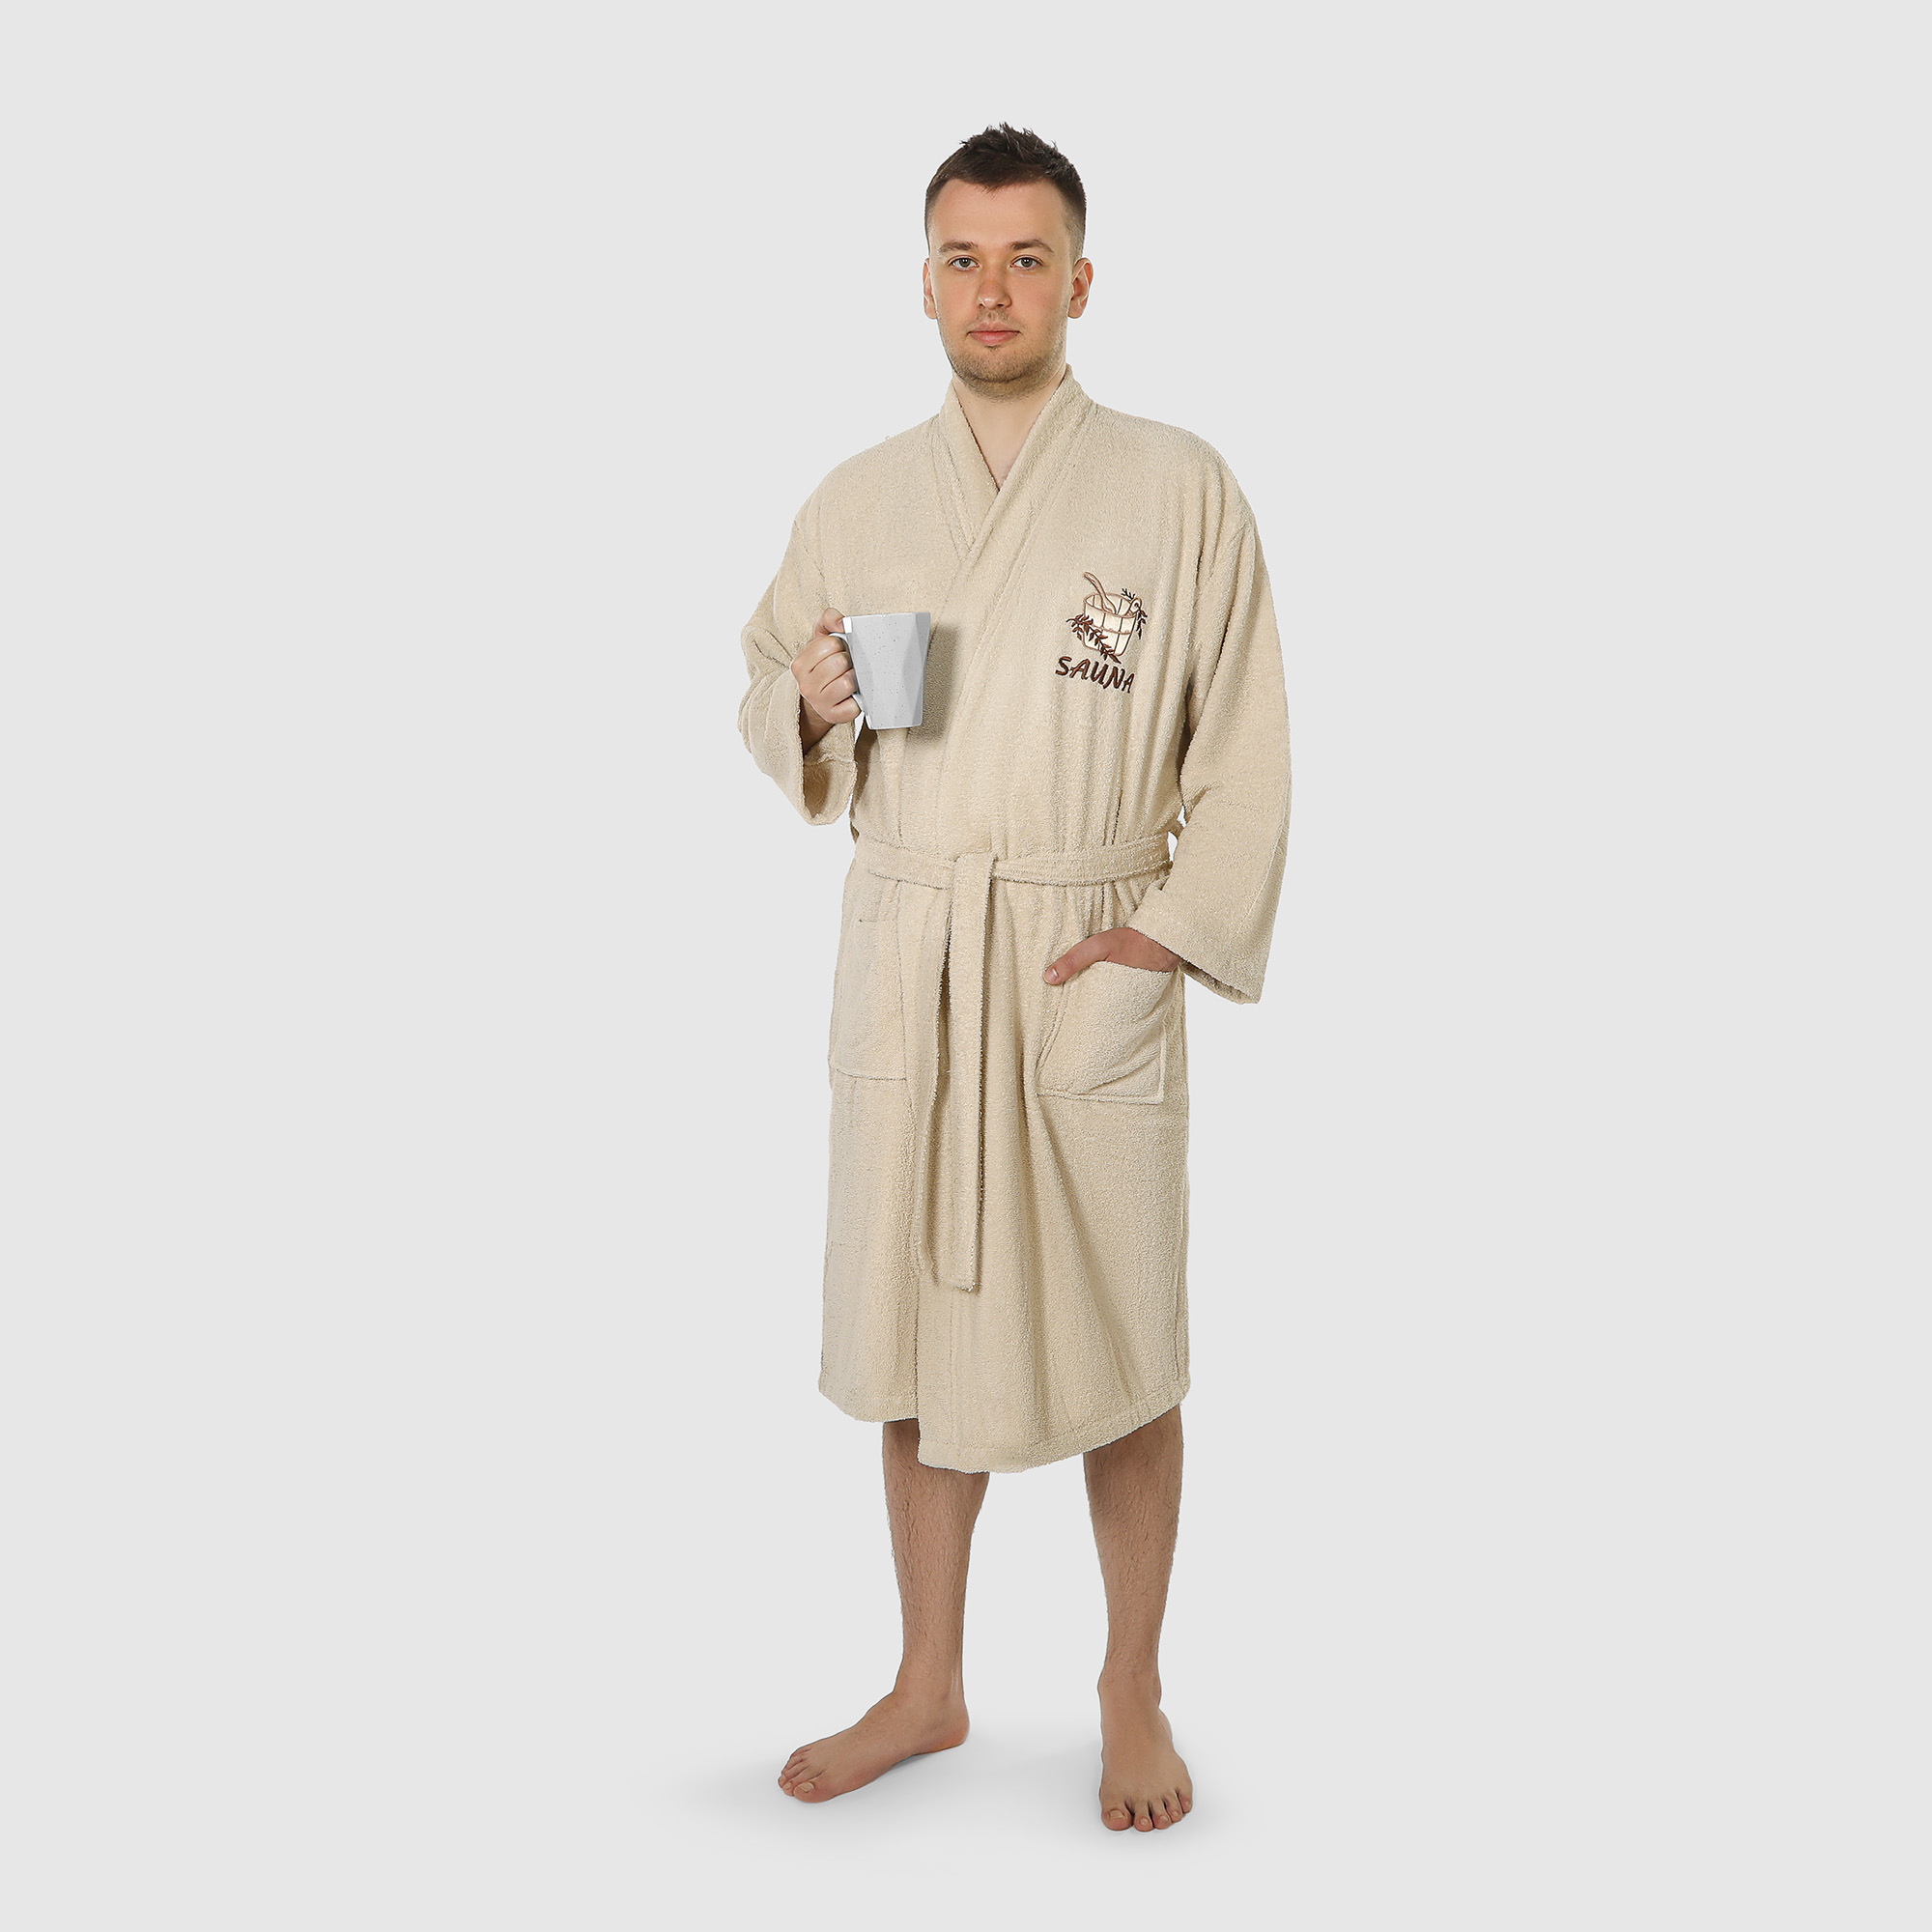 Халат мужской махровый Asil Sauna Kimono brown XL халат женский asil sauna beige l вафельный с воротником